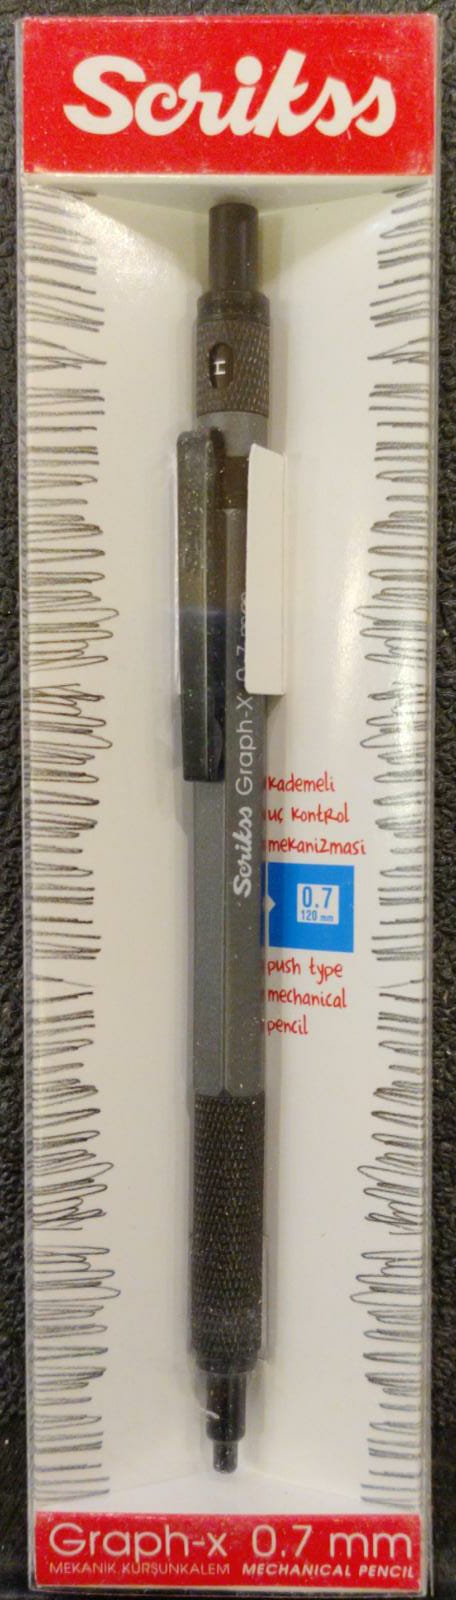 Scrikss Graph-x 0.7mm Mechanical Pencil Dark Grey